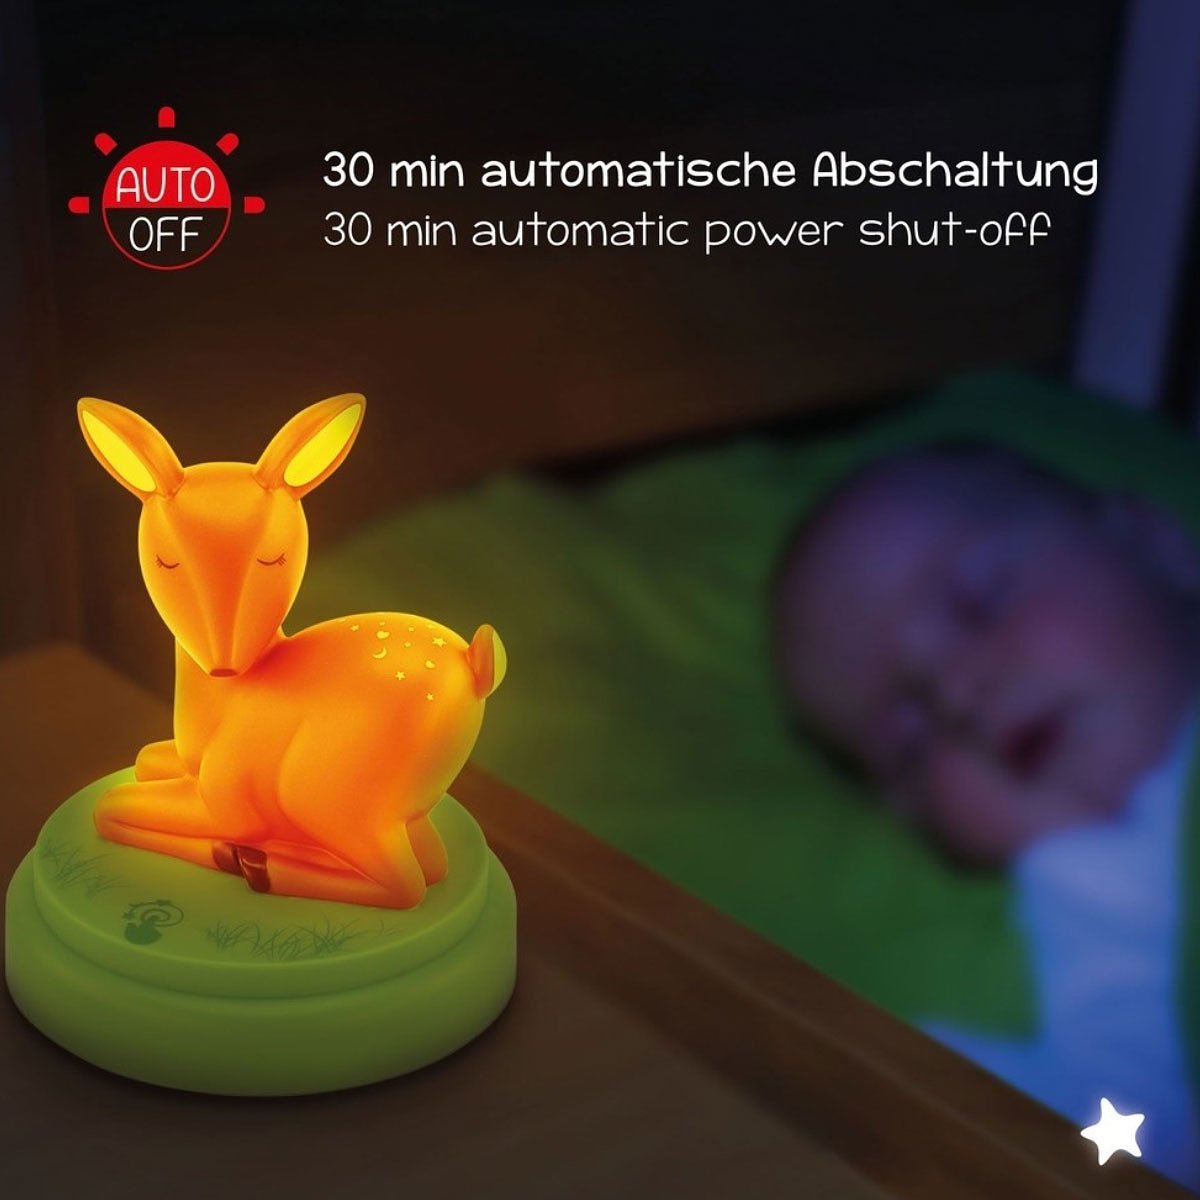 Mobiel nachtlampje herten mobiel, de LED LIGHT slaaphulp voor kinderen als hertenfiguur